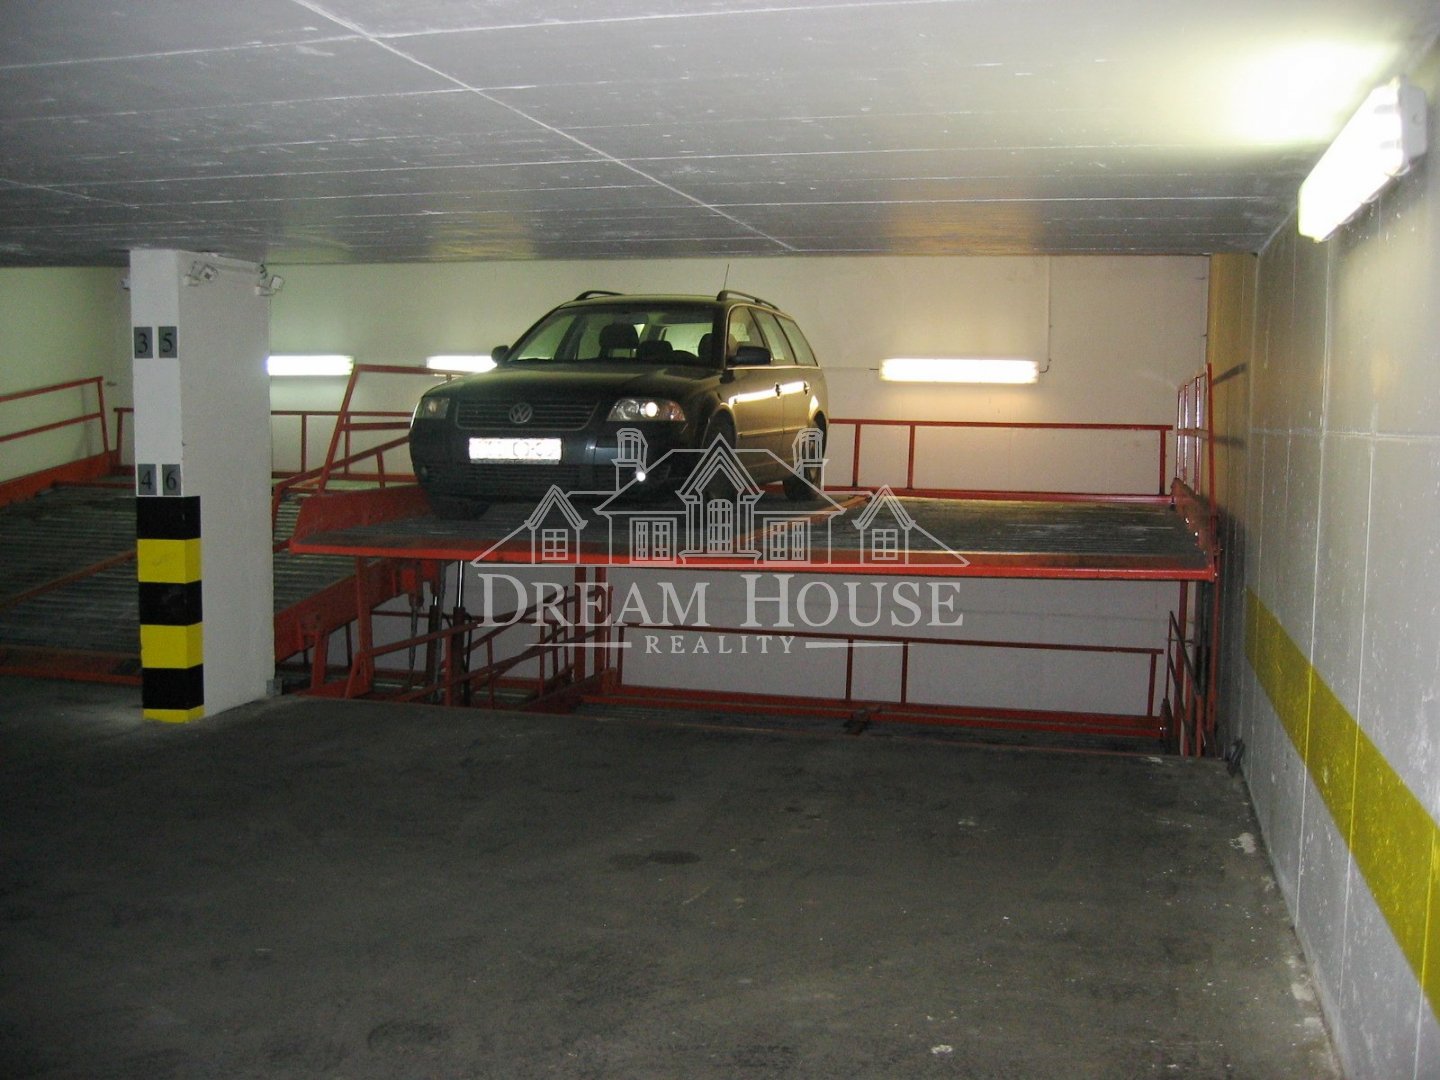 Pronájem parkovacího místa v podzemní garáži, Praha 2 - Vinohrady